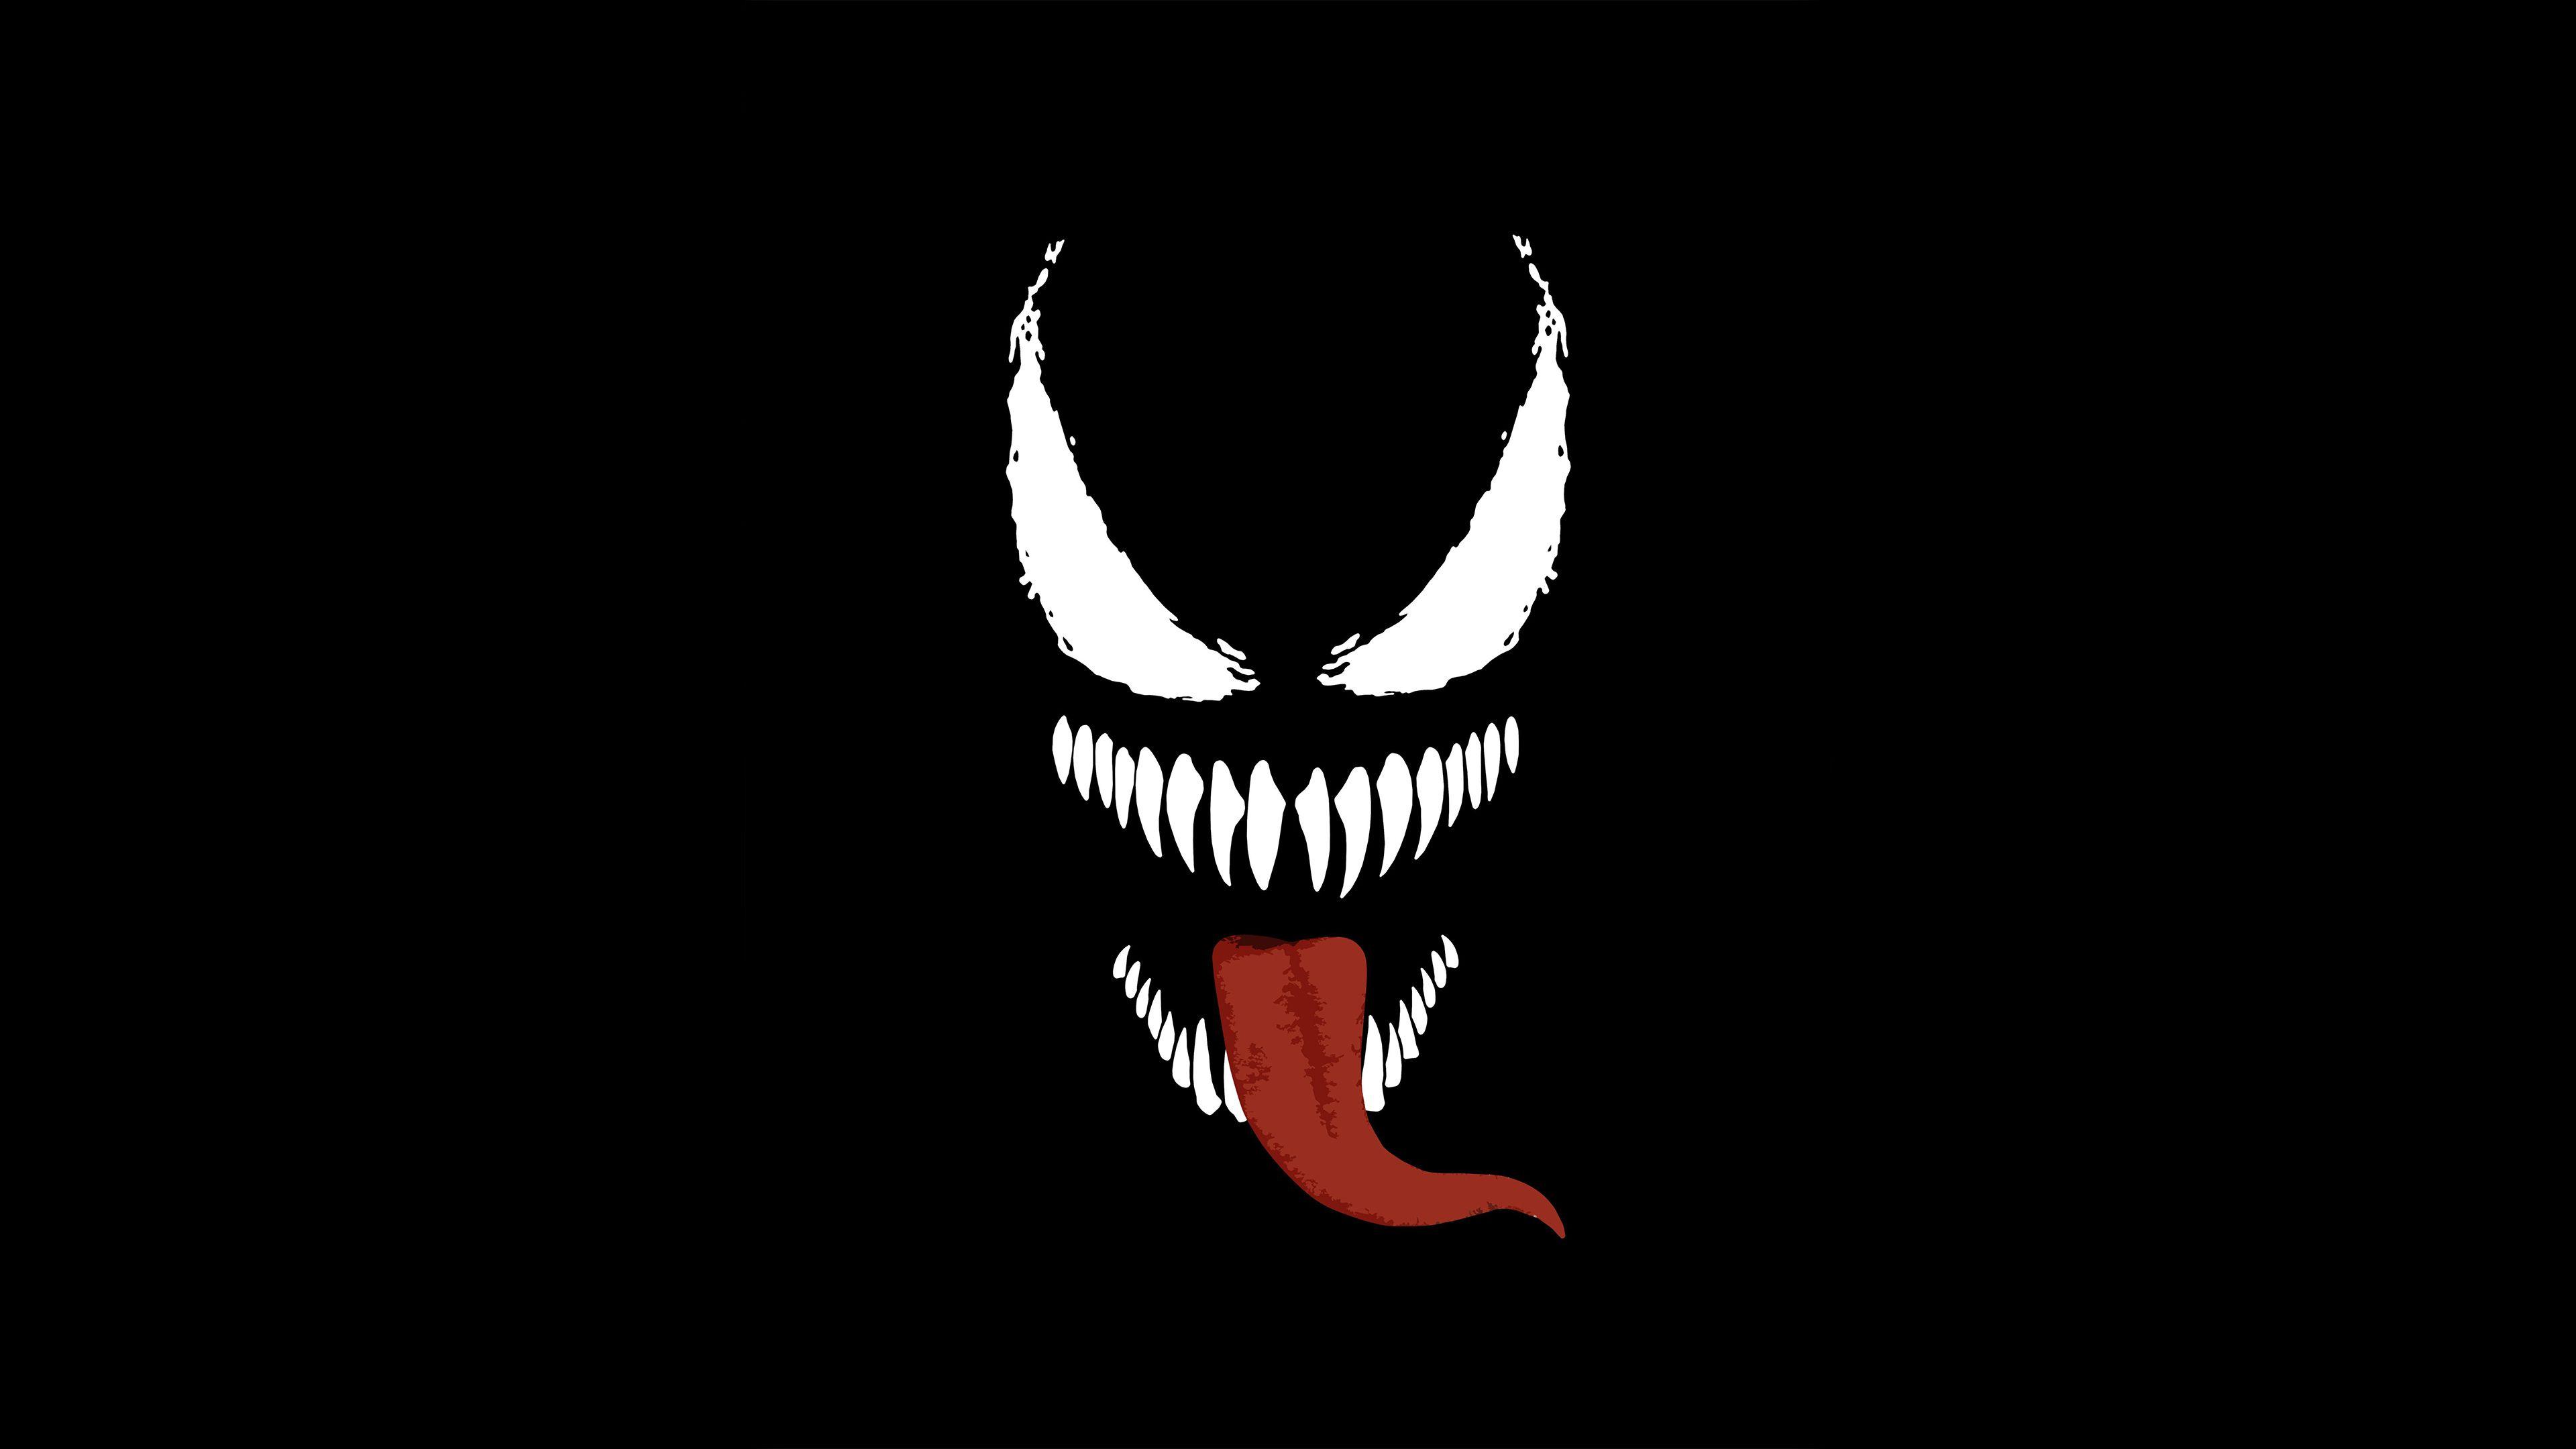 Venom Face Wallpapers